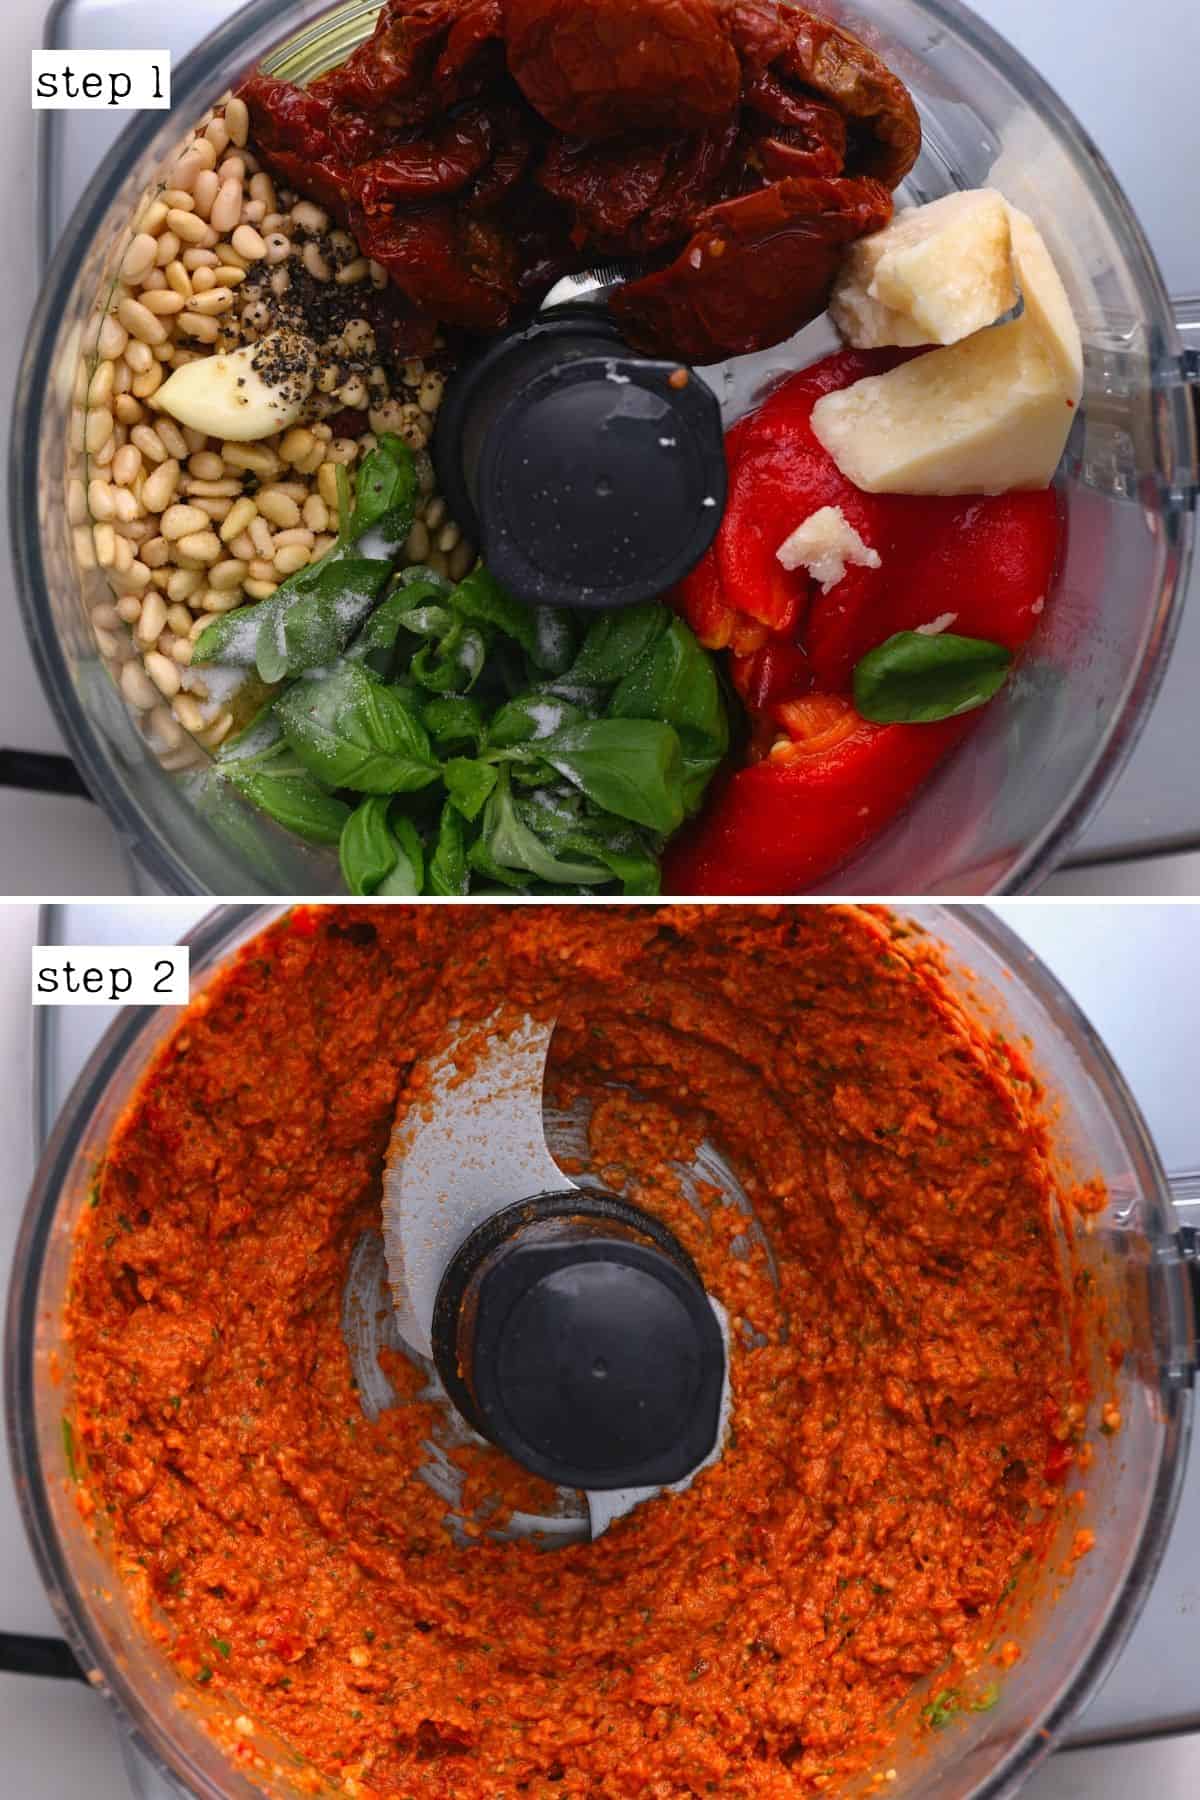 Steps for blending red pesto